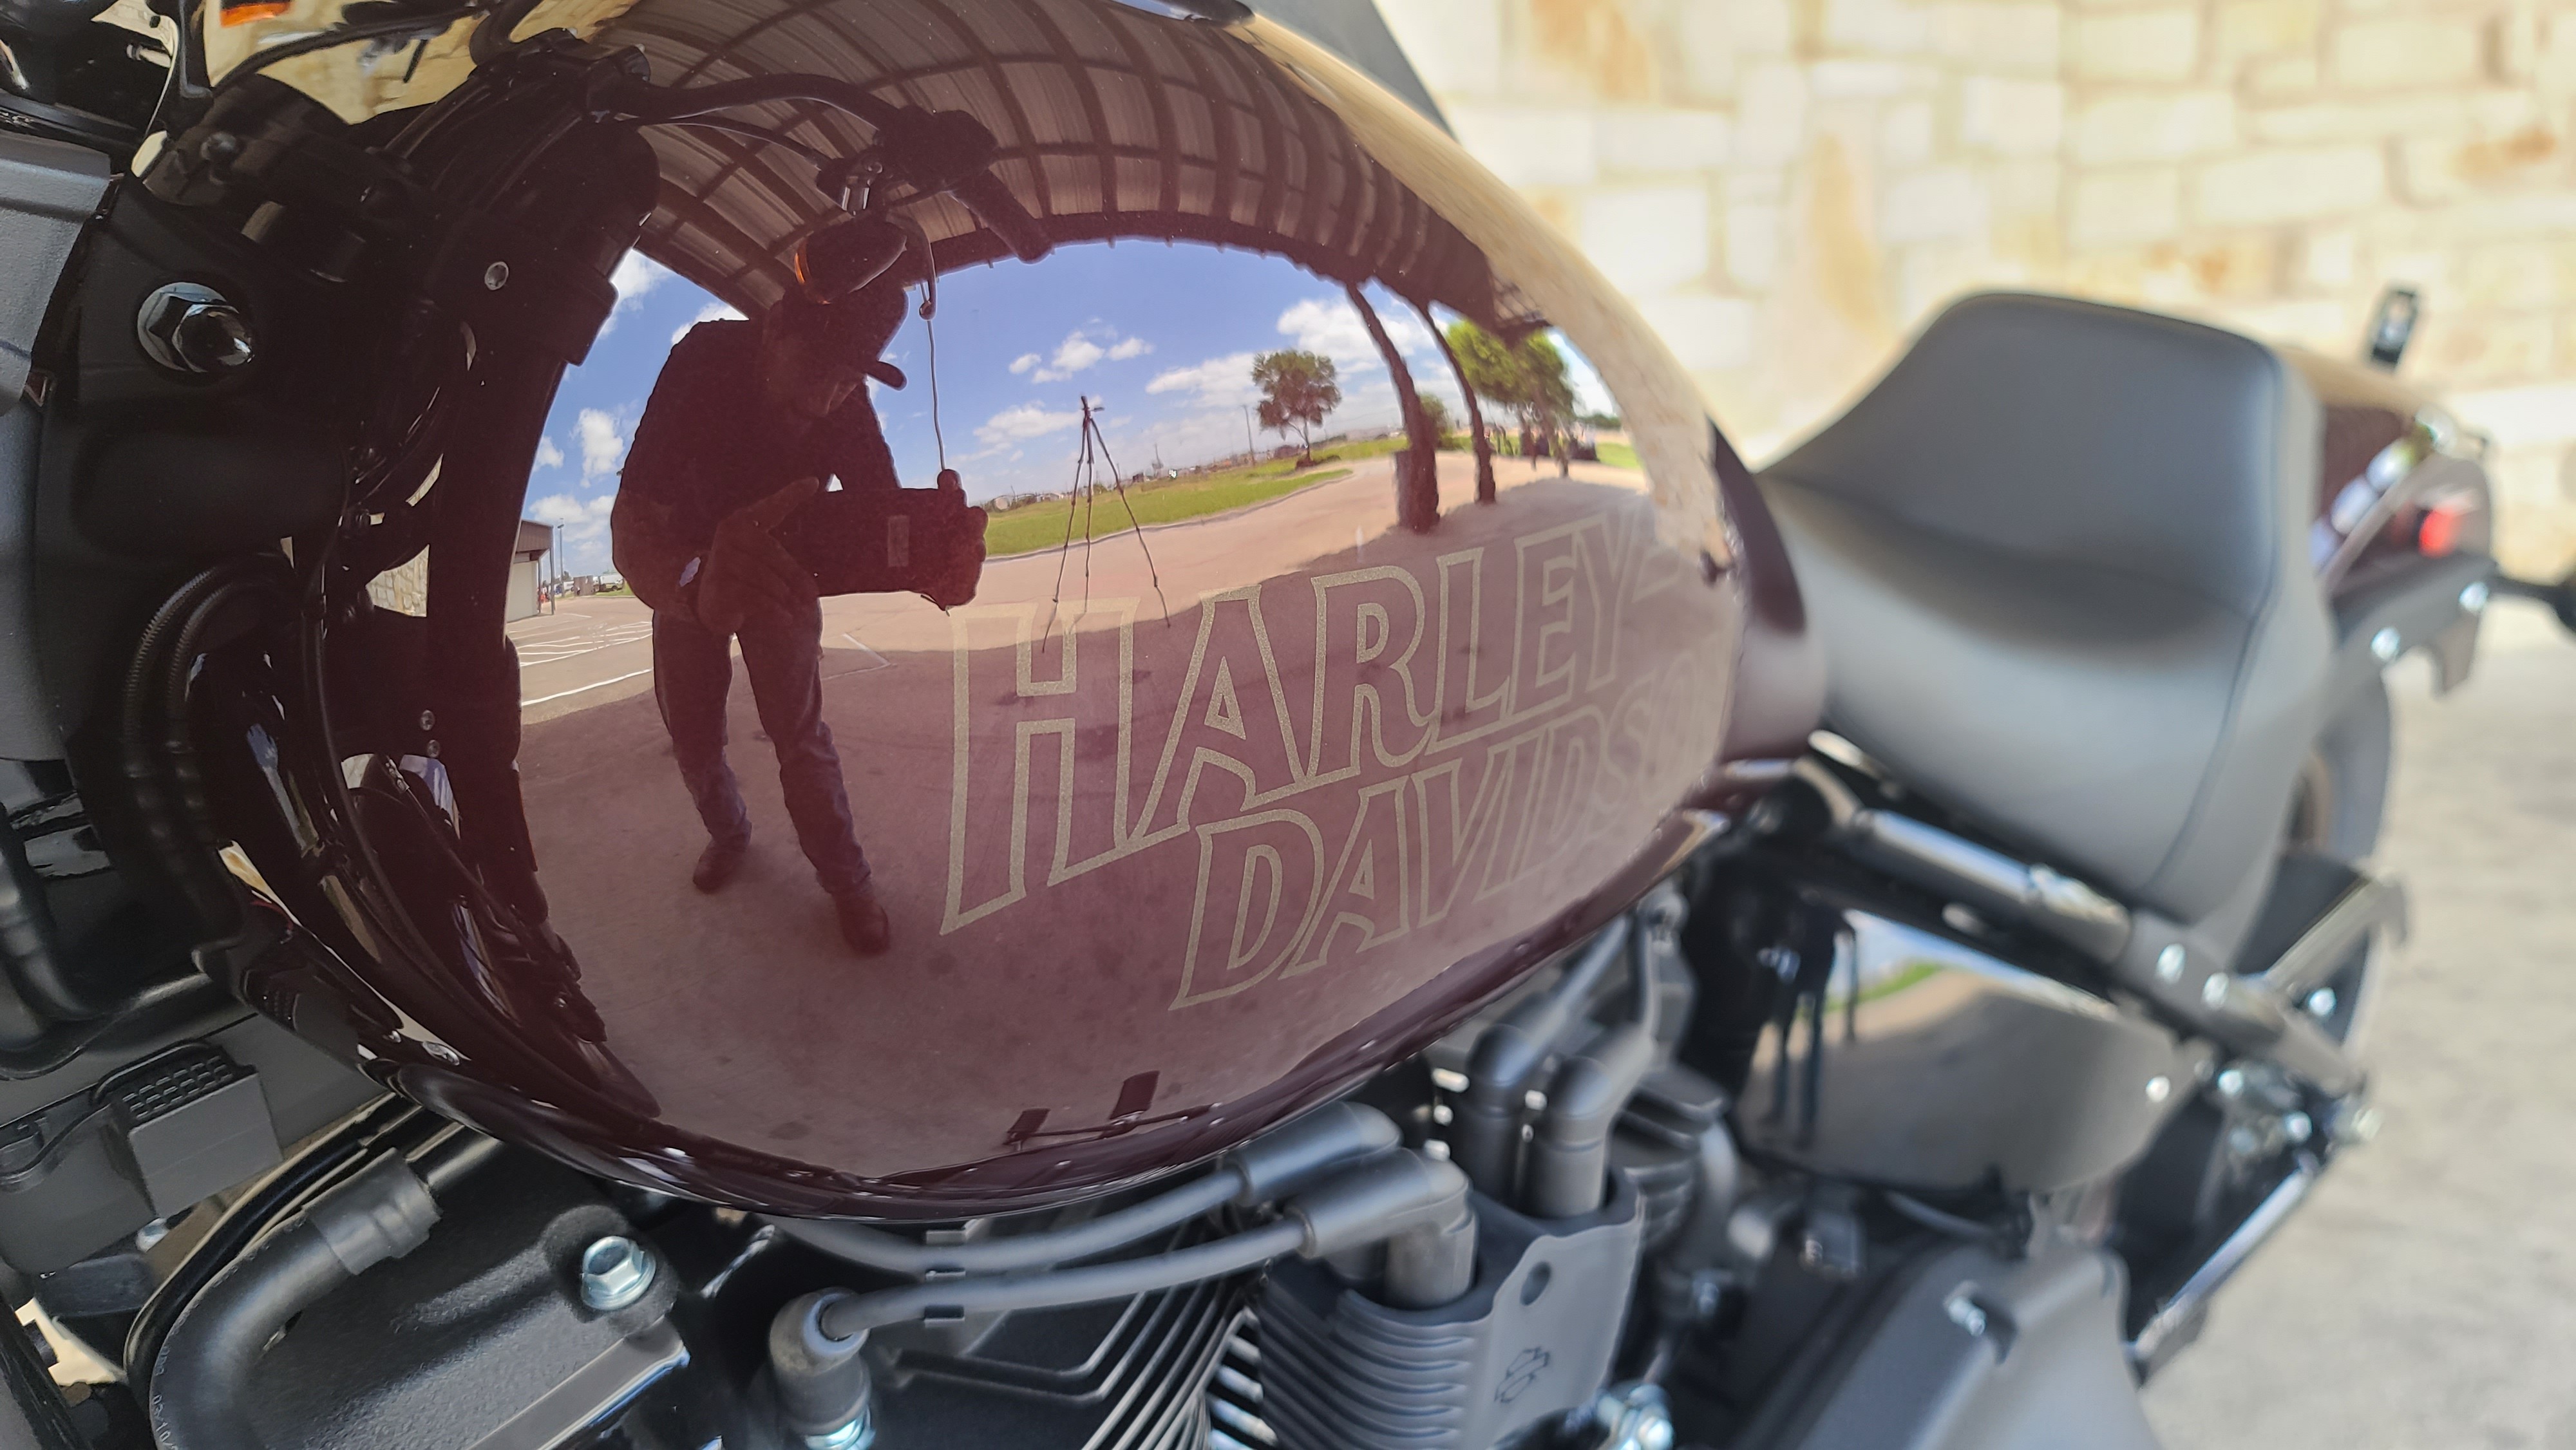 2021 Harley-Davidson Cruiser FXLRS Low Rider S at Harley-Davidson of Waco